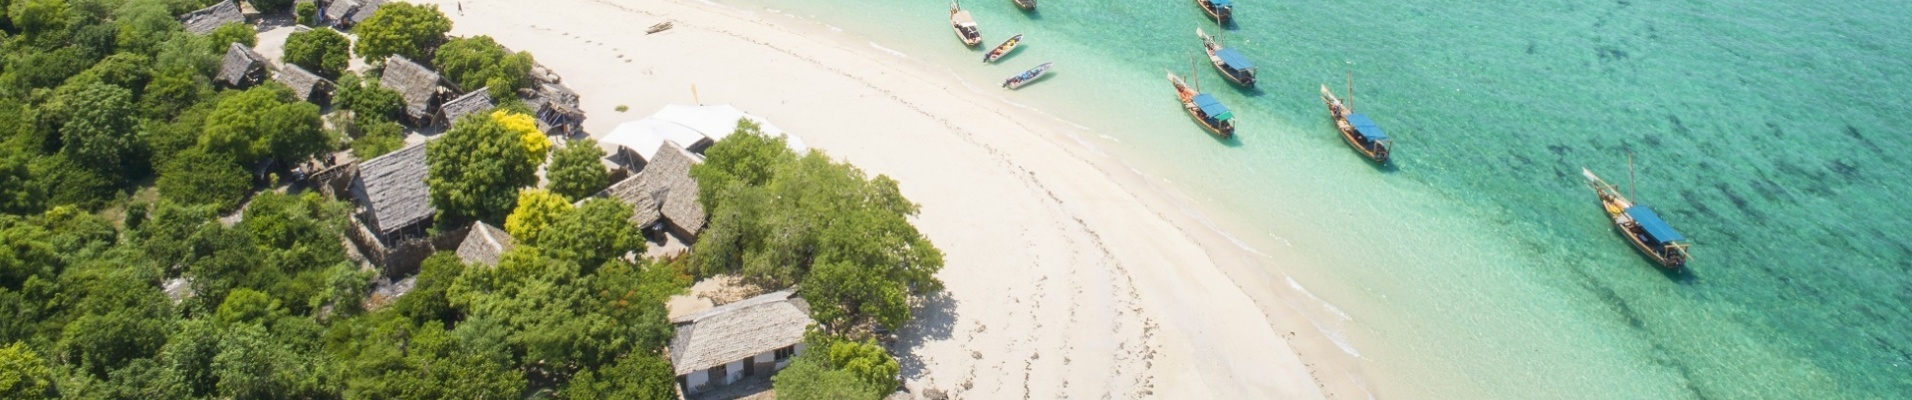 Zanzibar plage